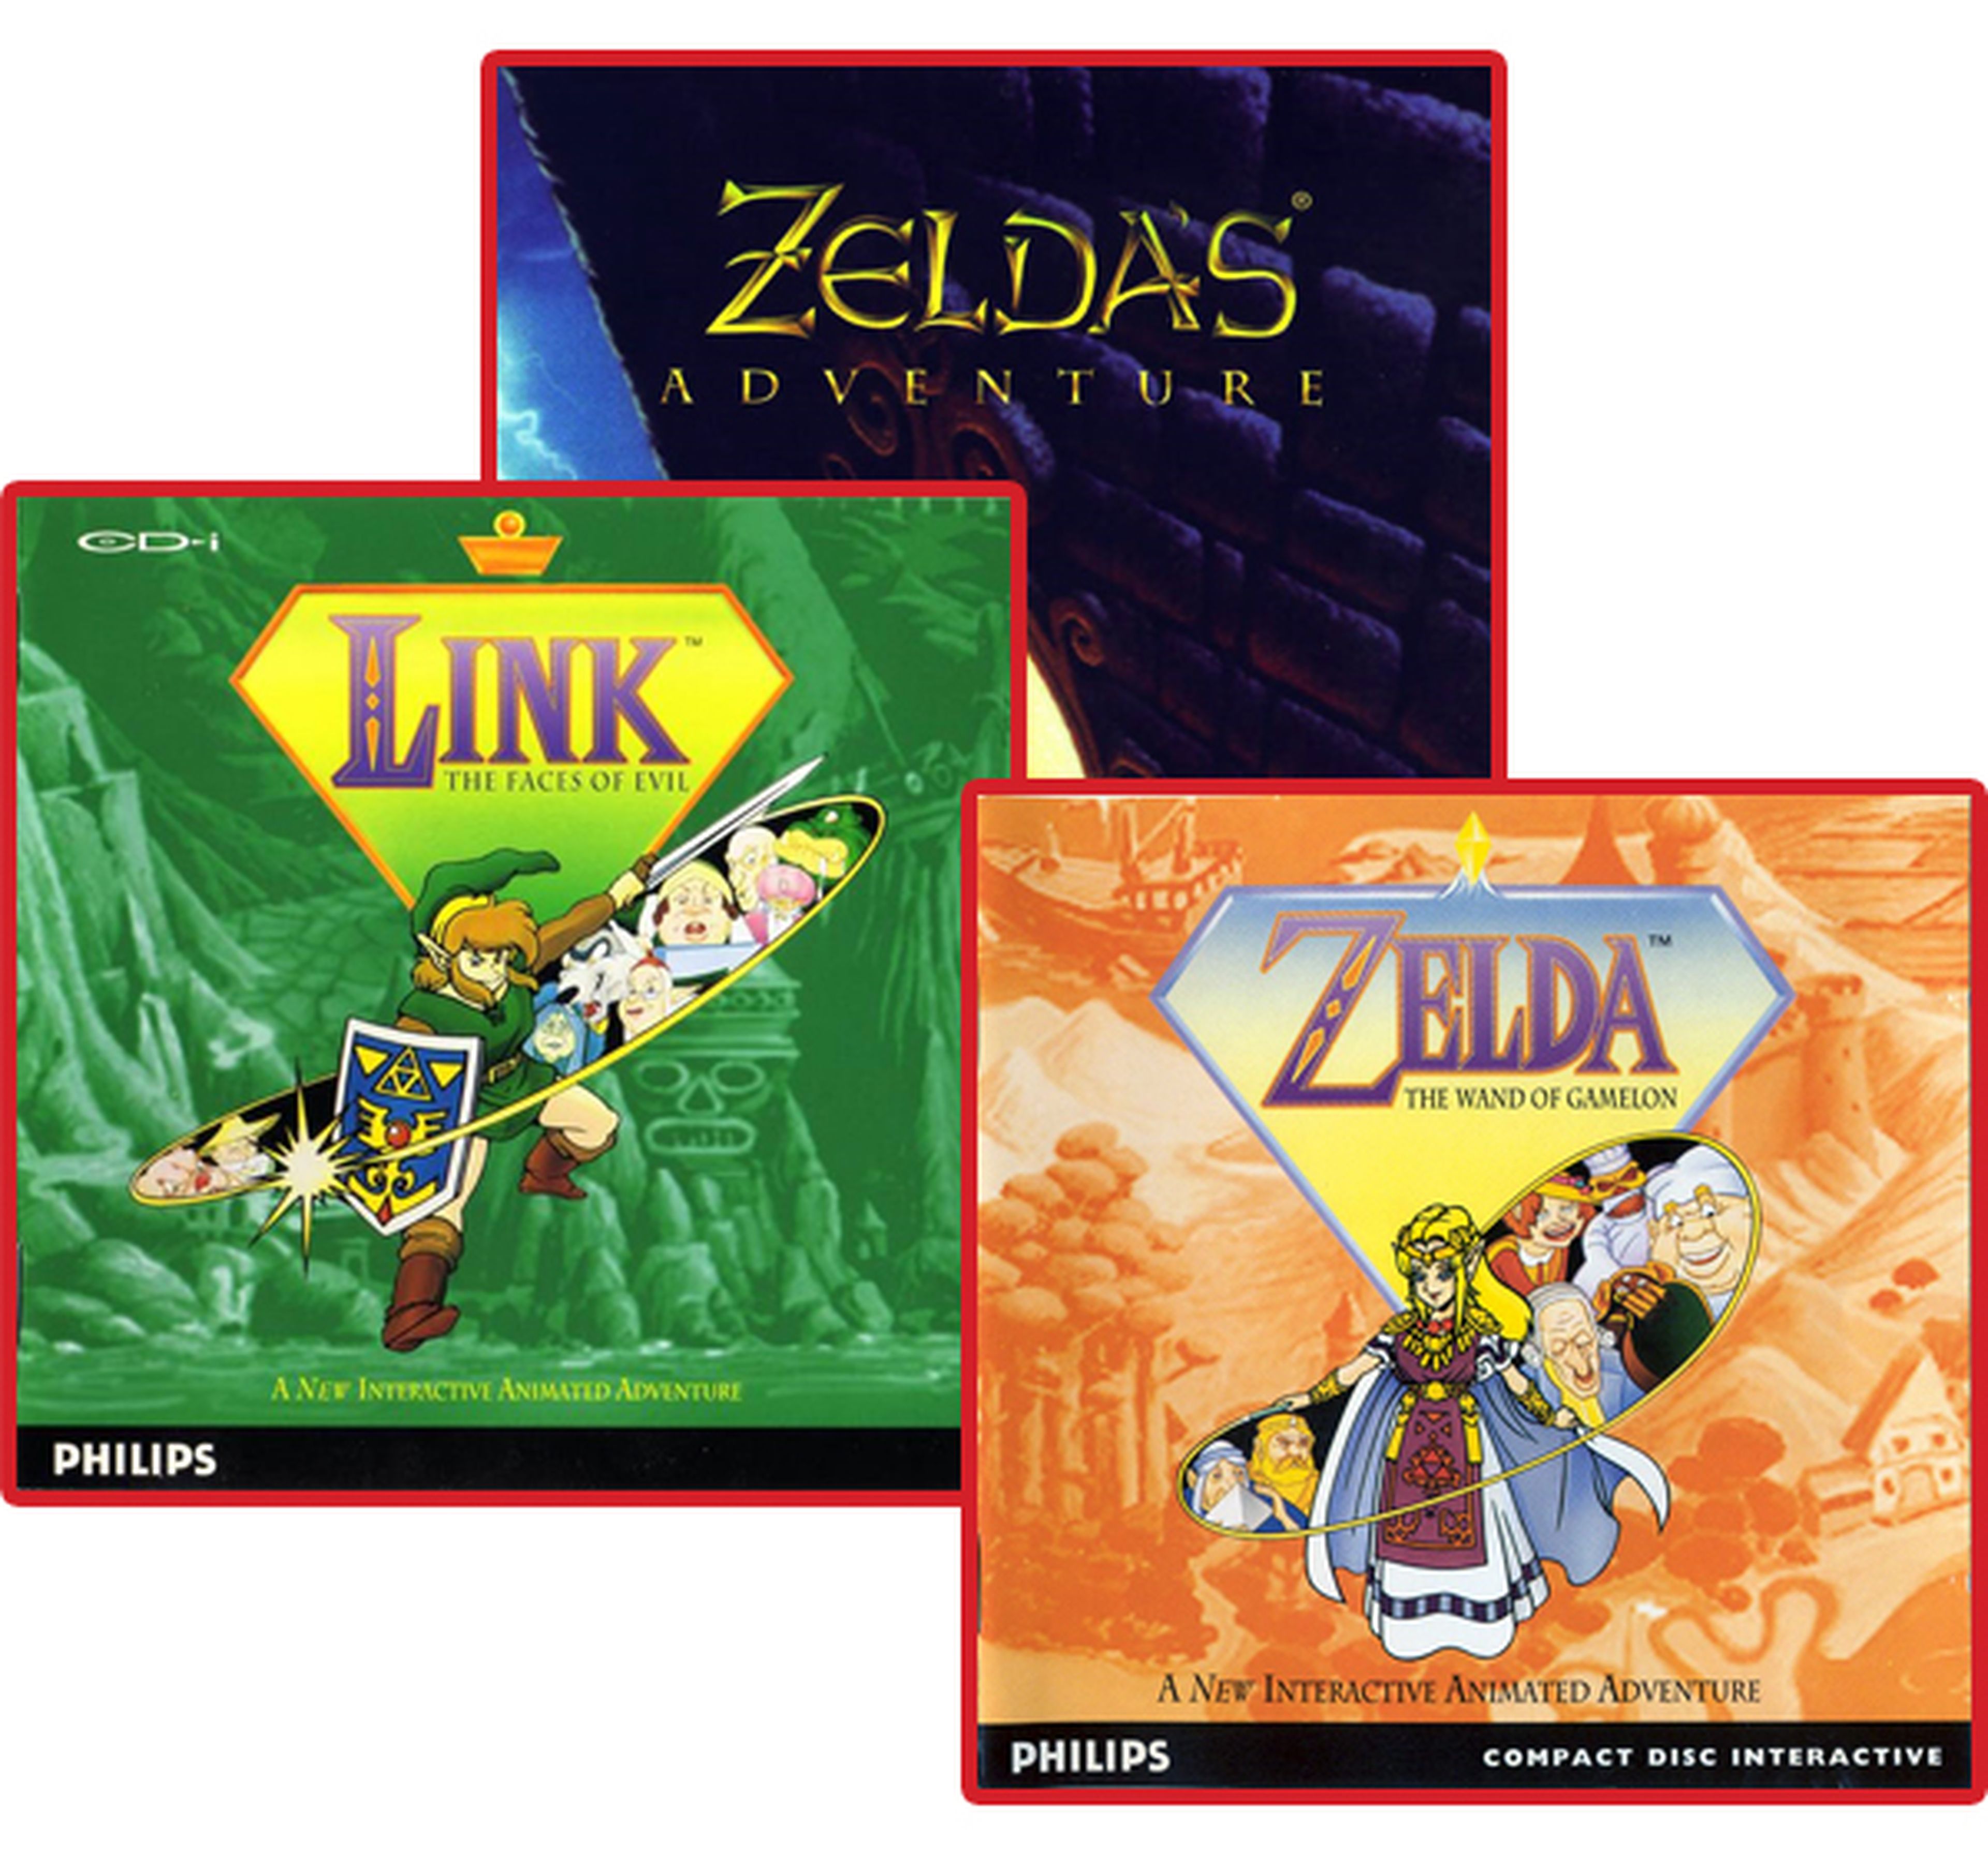 ¿Los Zelda de CD-i forman parte de la cronología oficial?